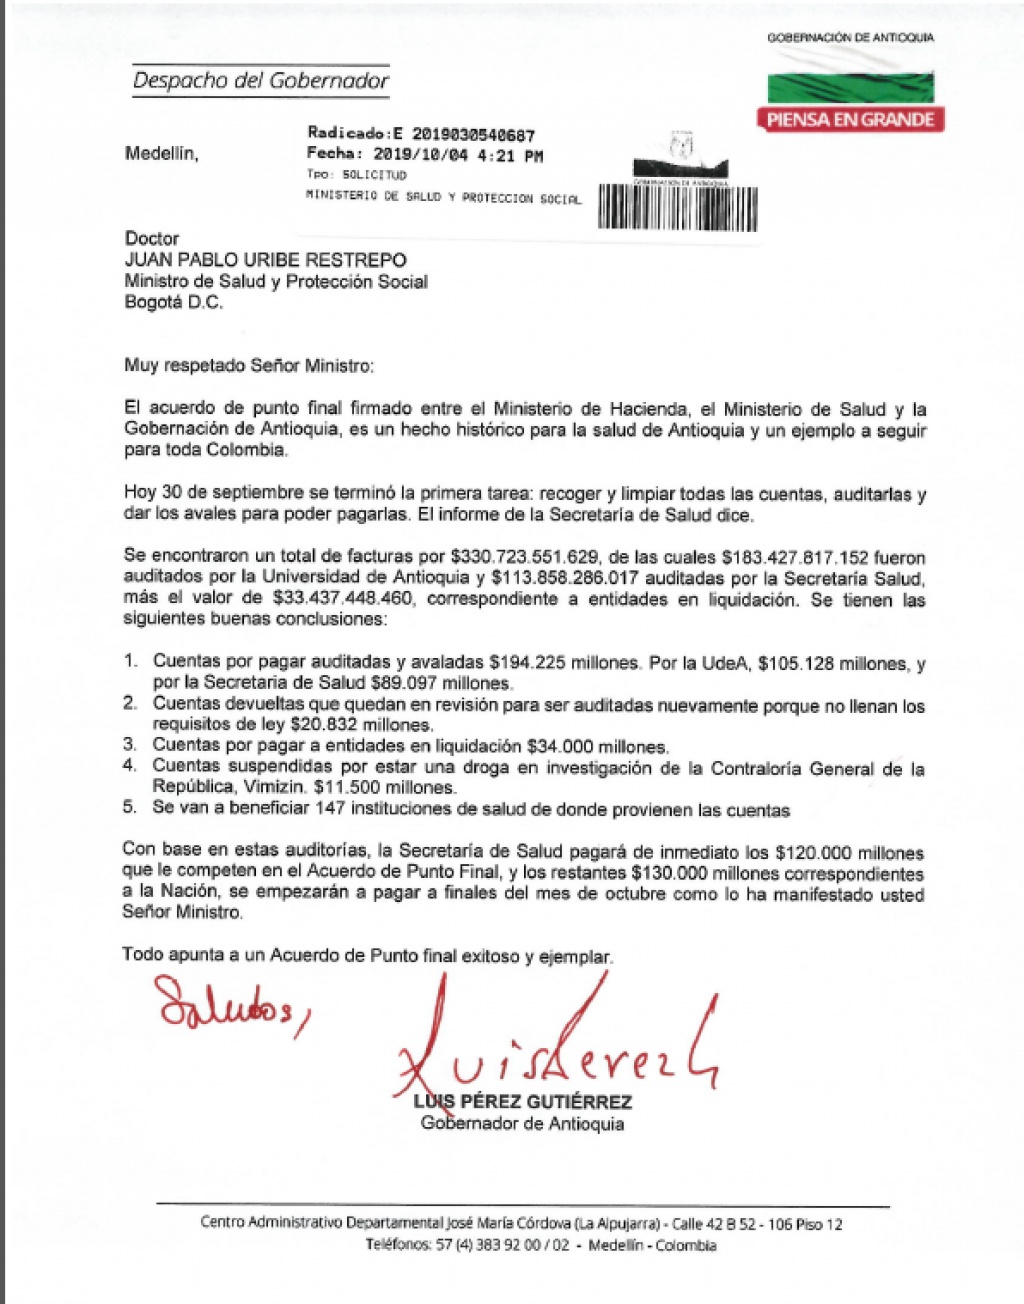 Carta del Gobernador de Antioquia al Ministro de Salud y otros altos funcionarios, sobre balance del Acuerdo de Punto Final en la cuentas de salud para Antioquia